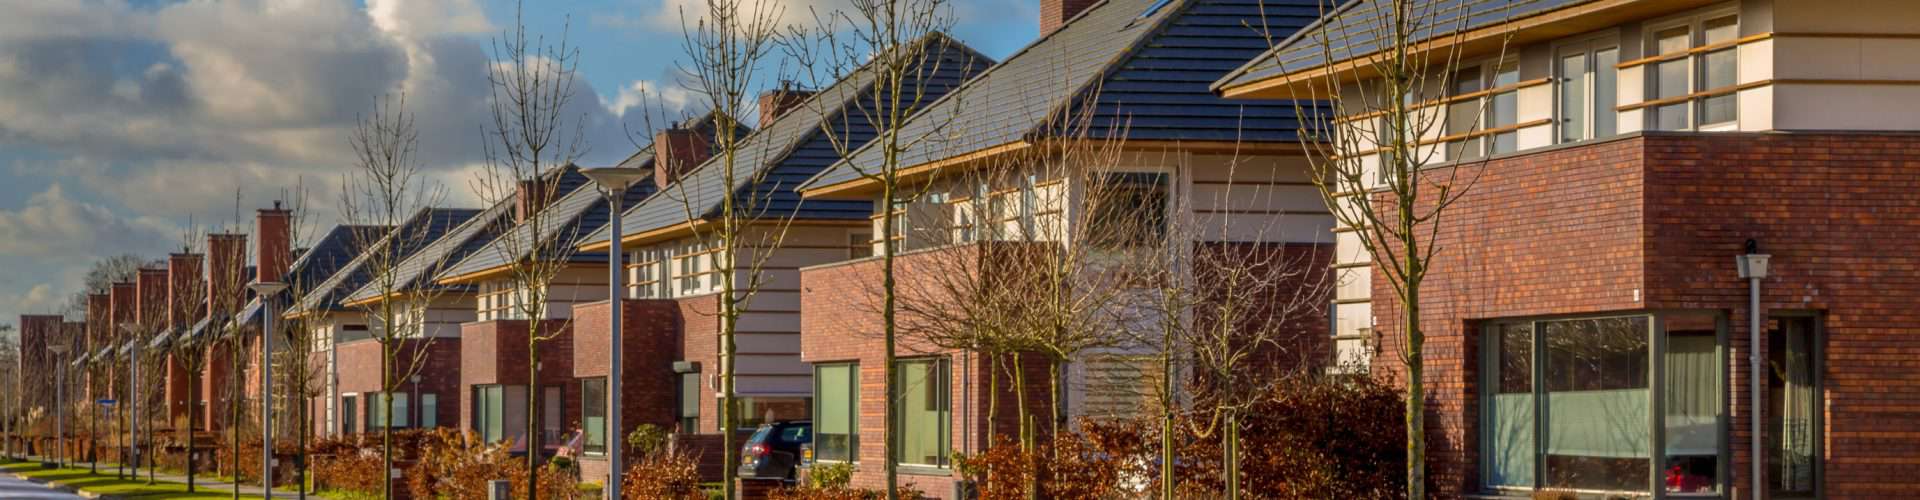 huizenprijzen-2018-nog-omhoog-Freek-Hypotheek